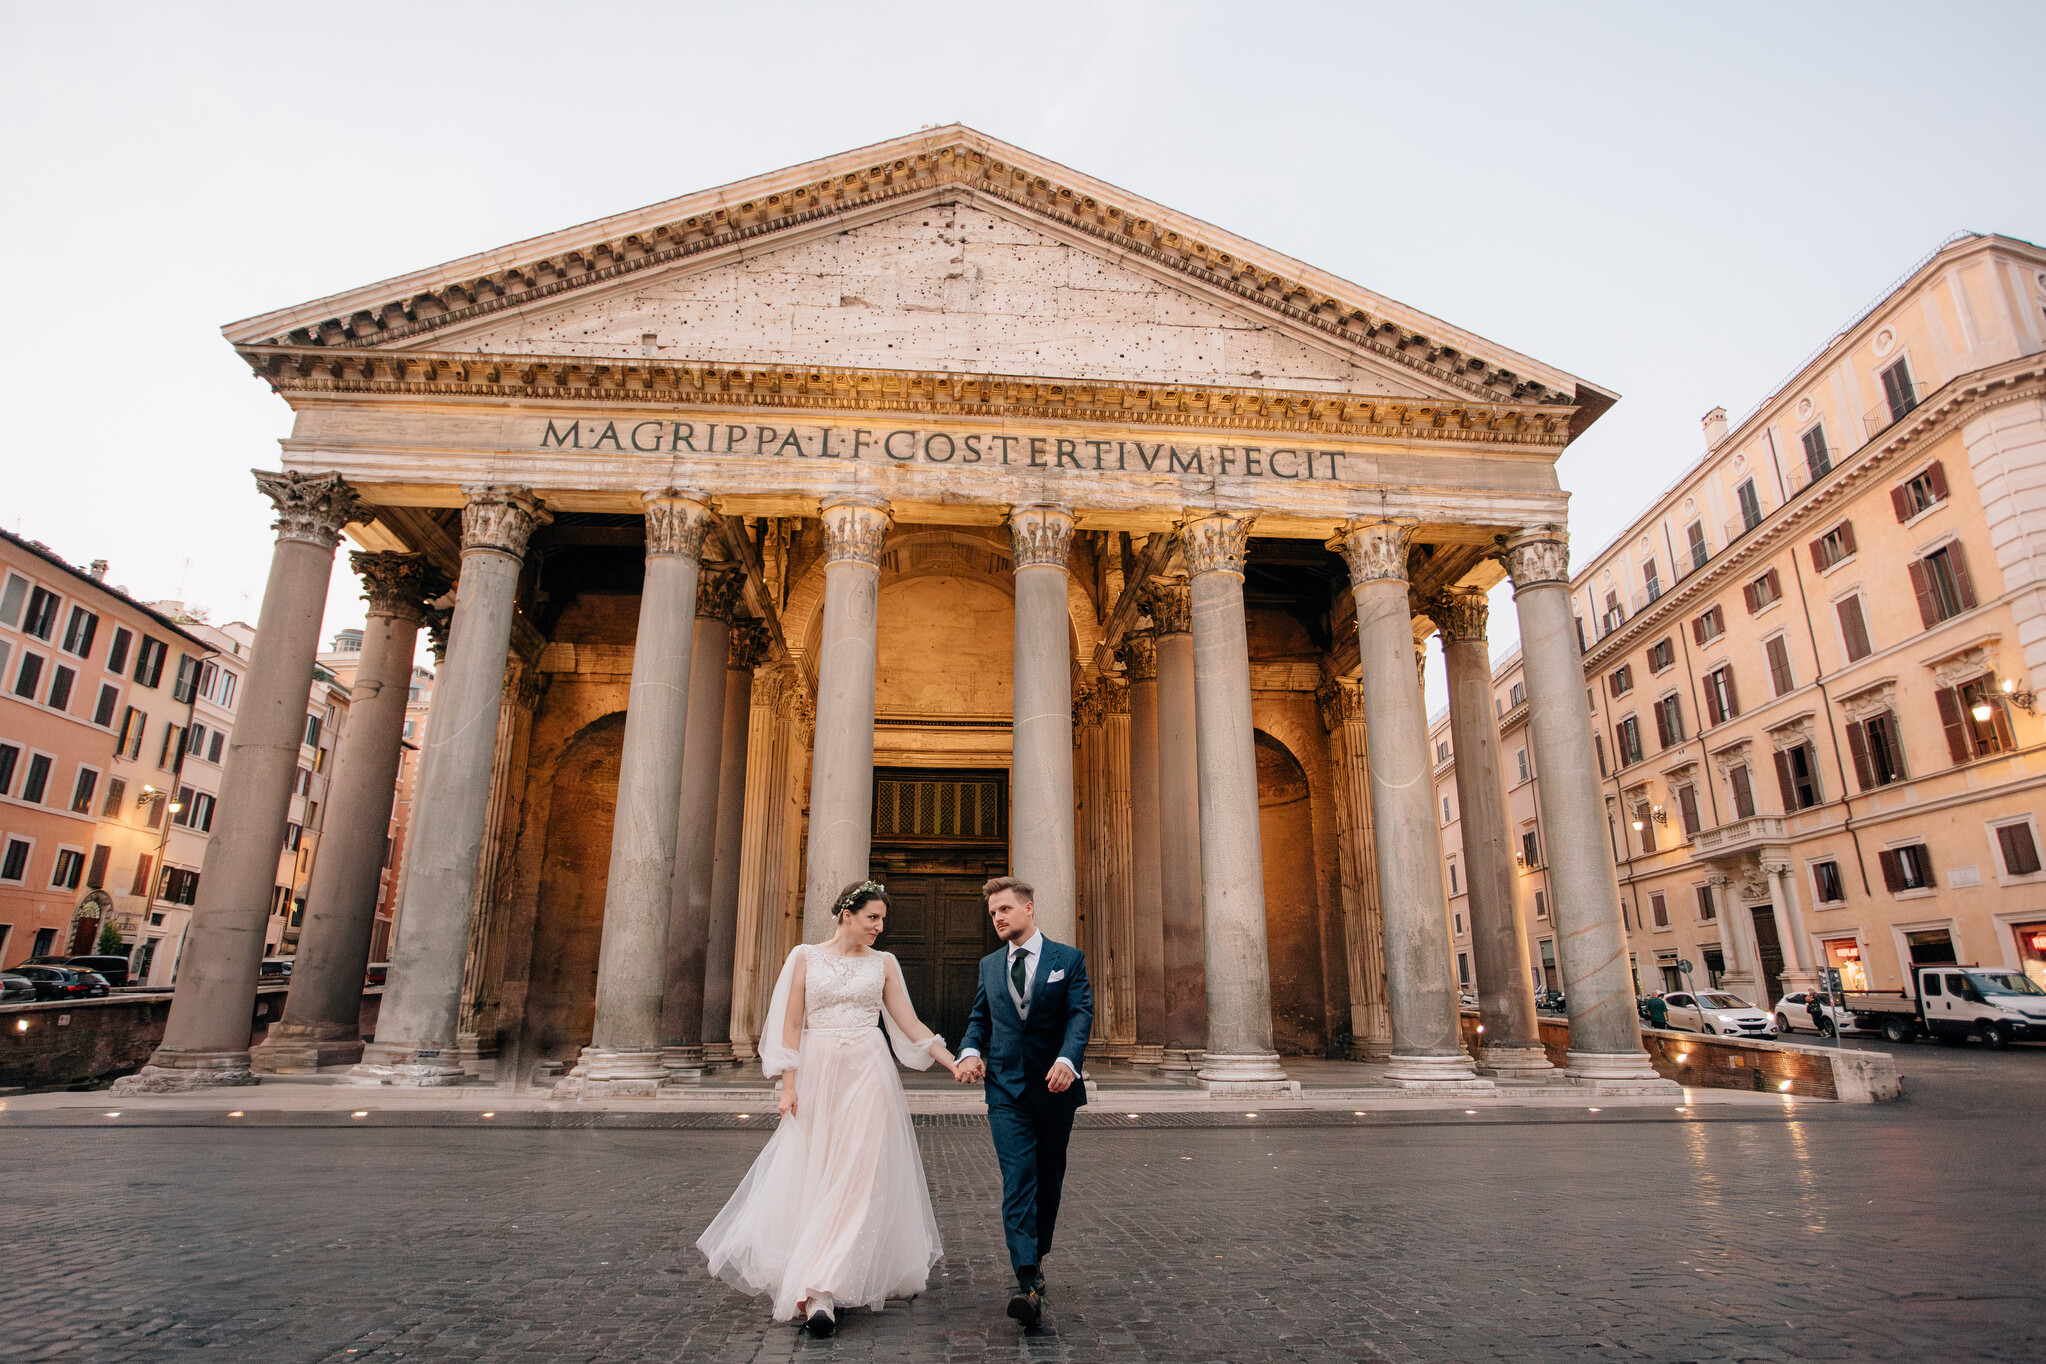 sesja poslubna w rzymie wlochy